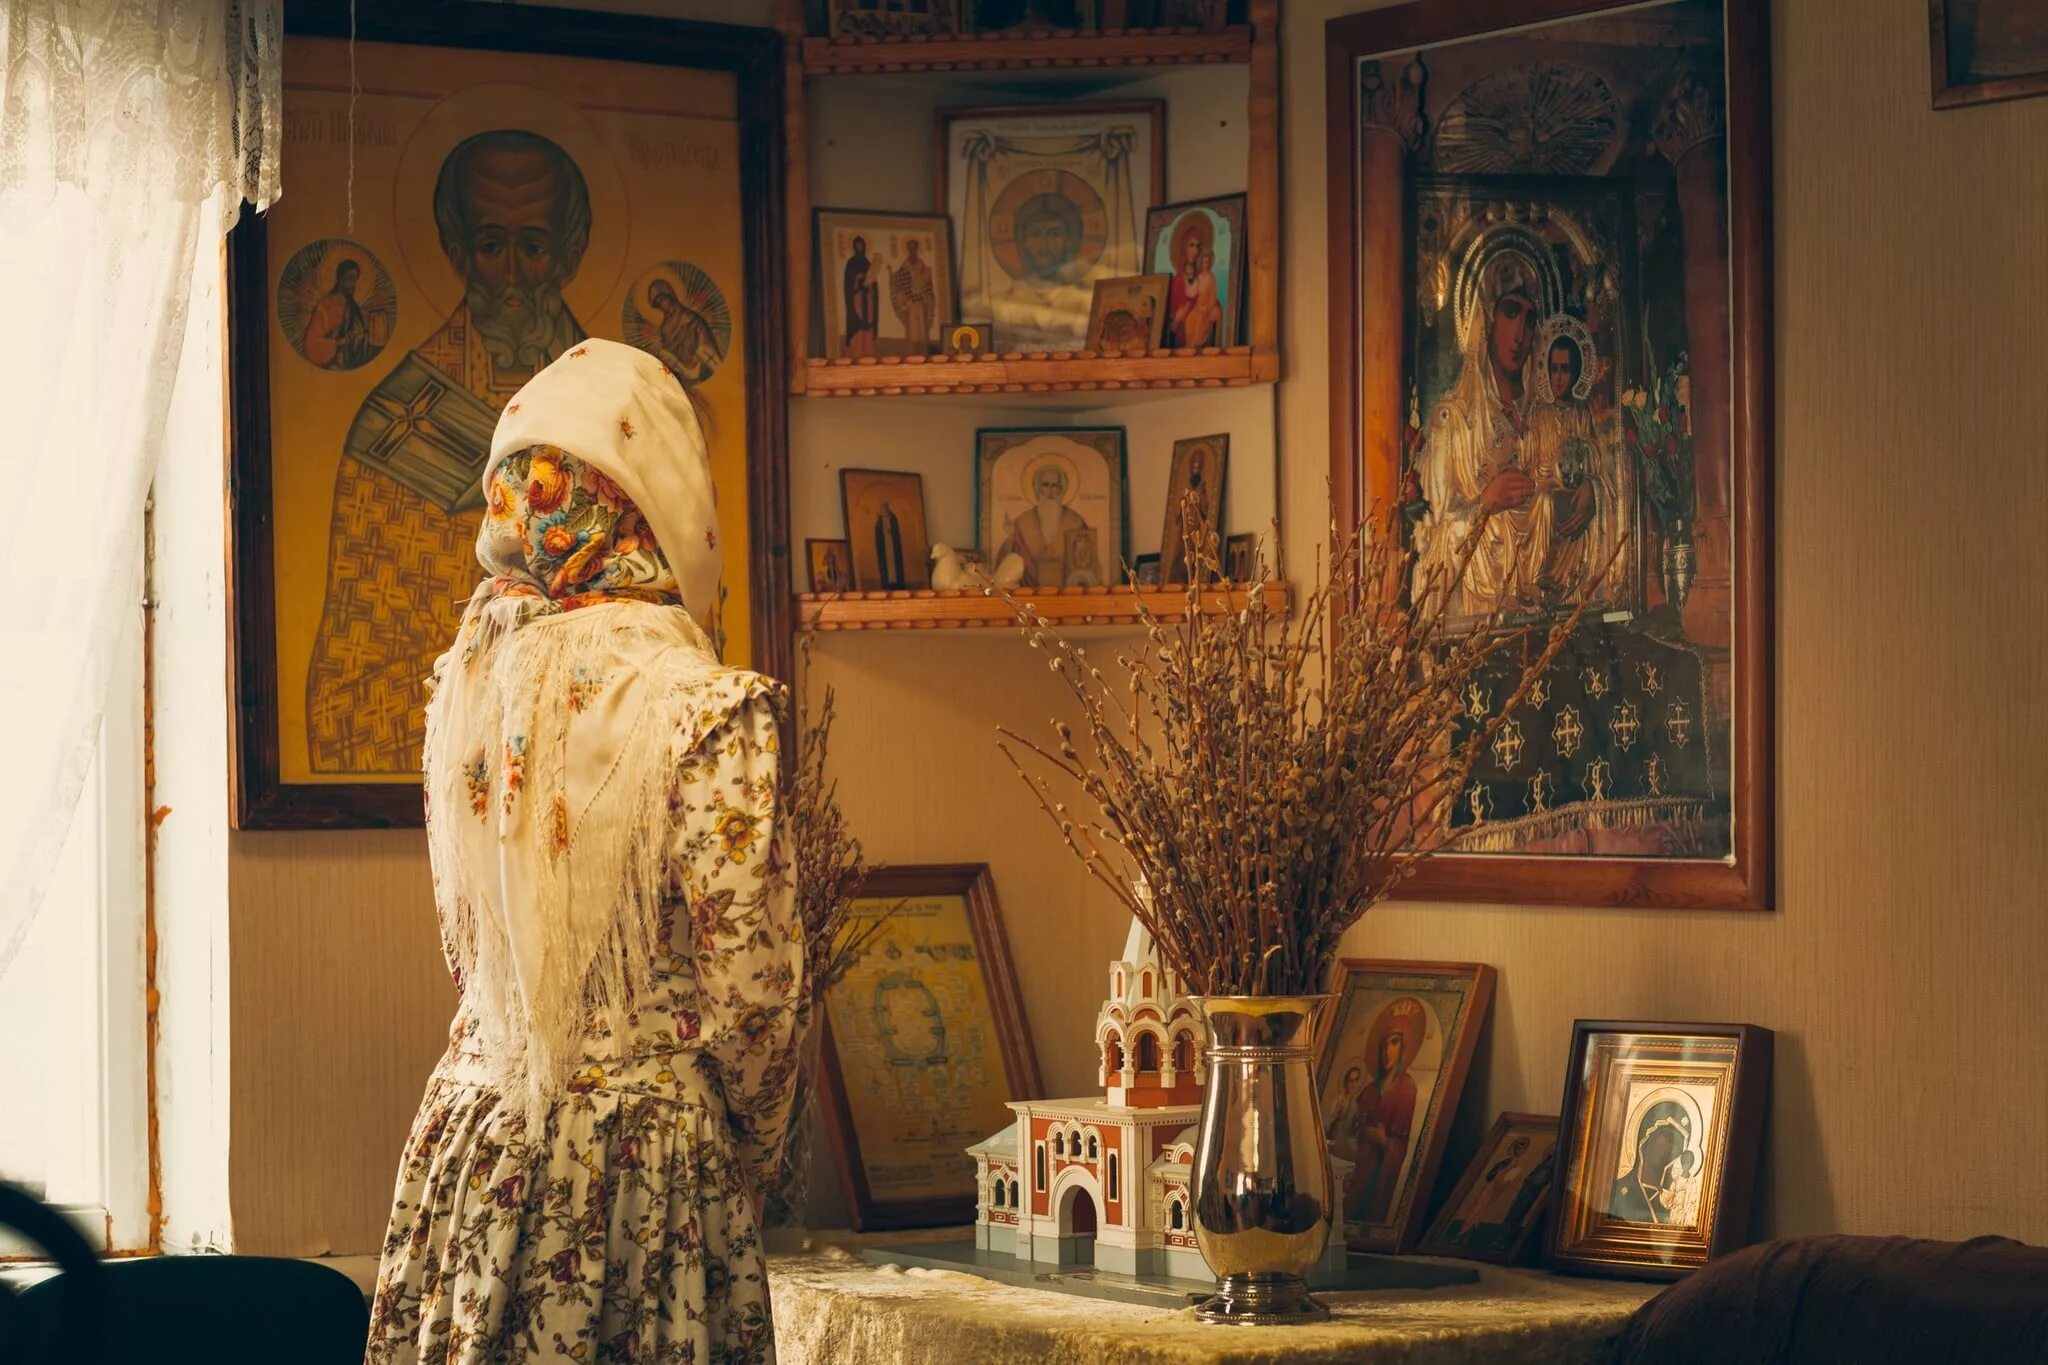 Молитва сегодня дома. Девушка перед иконой. Православный храм. Православный человек молится дома. Иконы в храме.